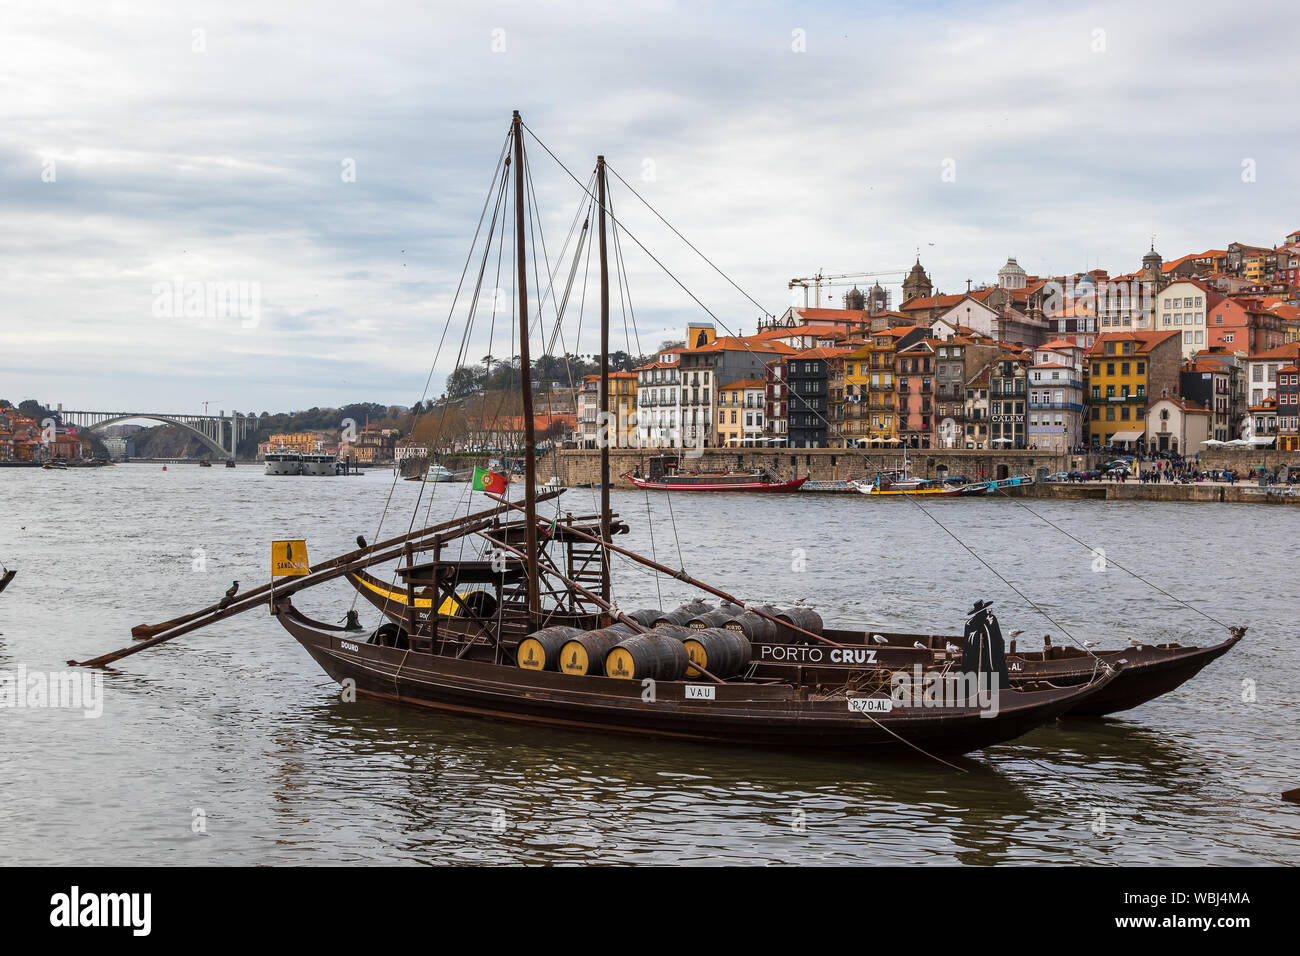 Il vino di Porto barche sul fiume Douro con Dom Luis I Bridge e la città vecchia di sfondo, a Ribeira, Porto, Portogallo Foto Stock